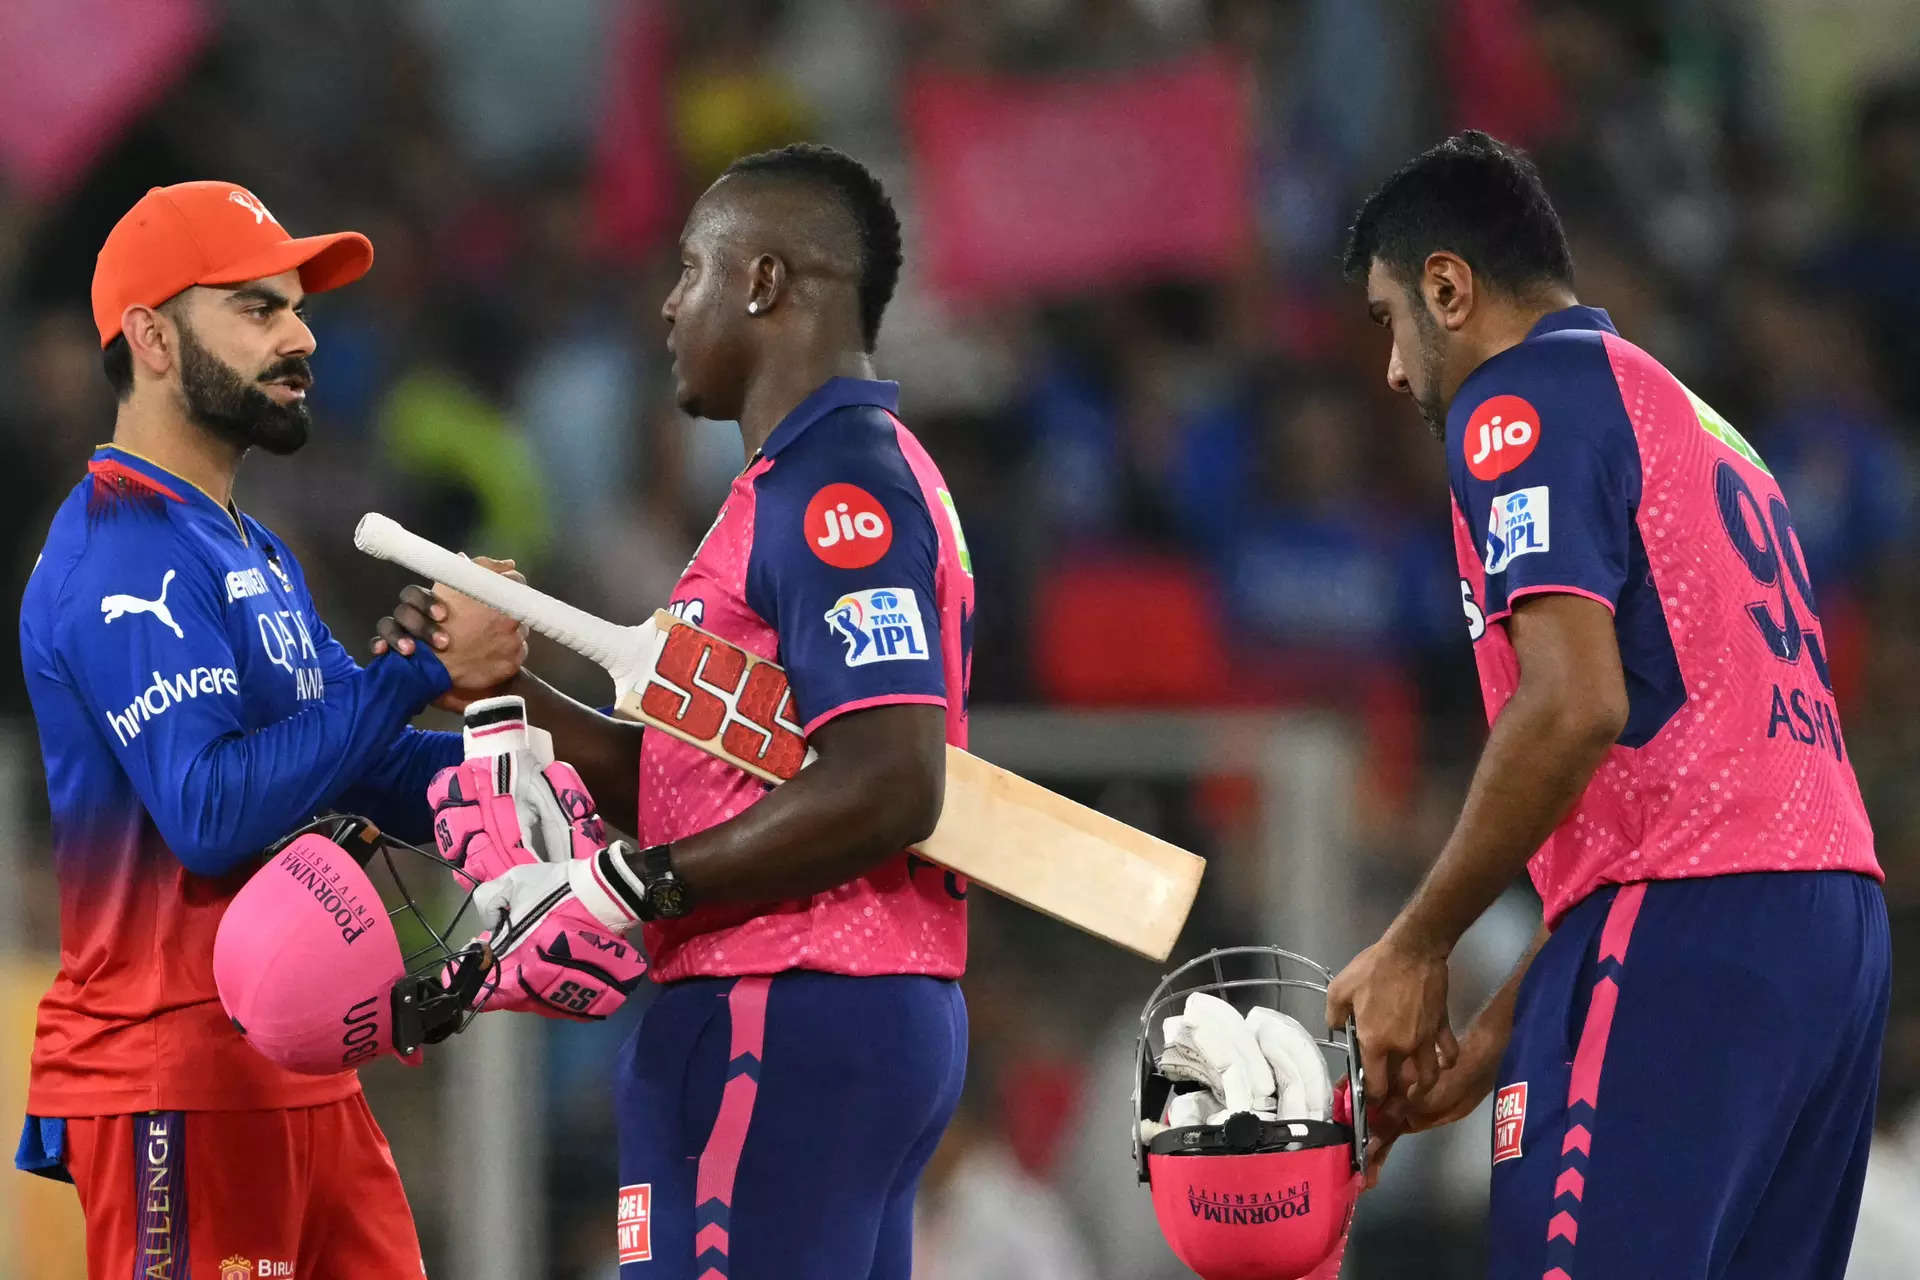 Rajasthan knock Bengaluru and Kohli out of IPL 